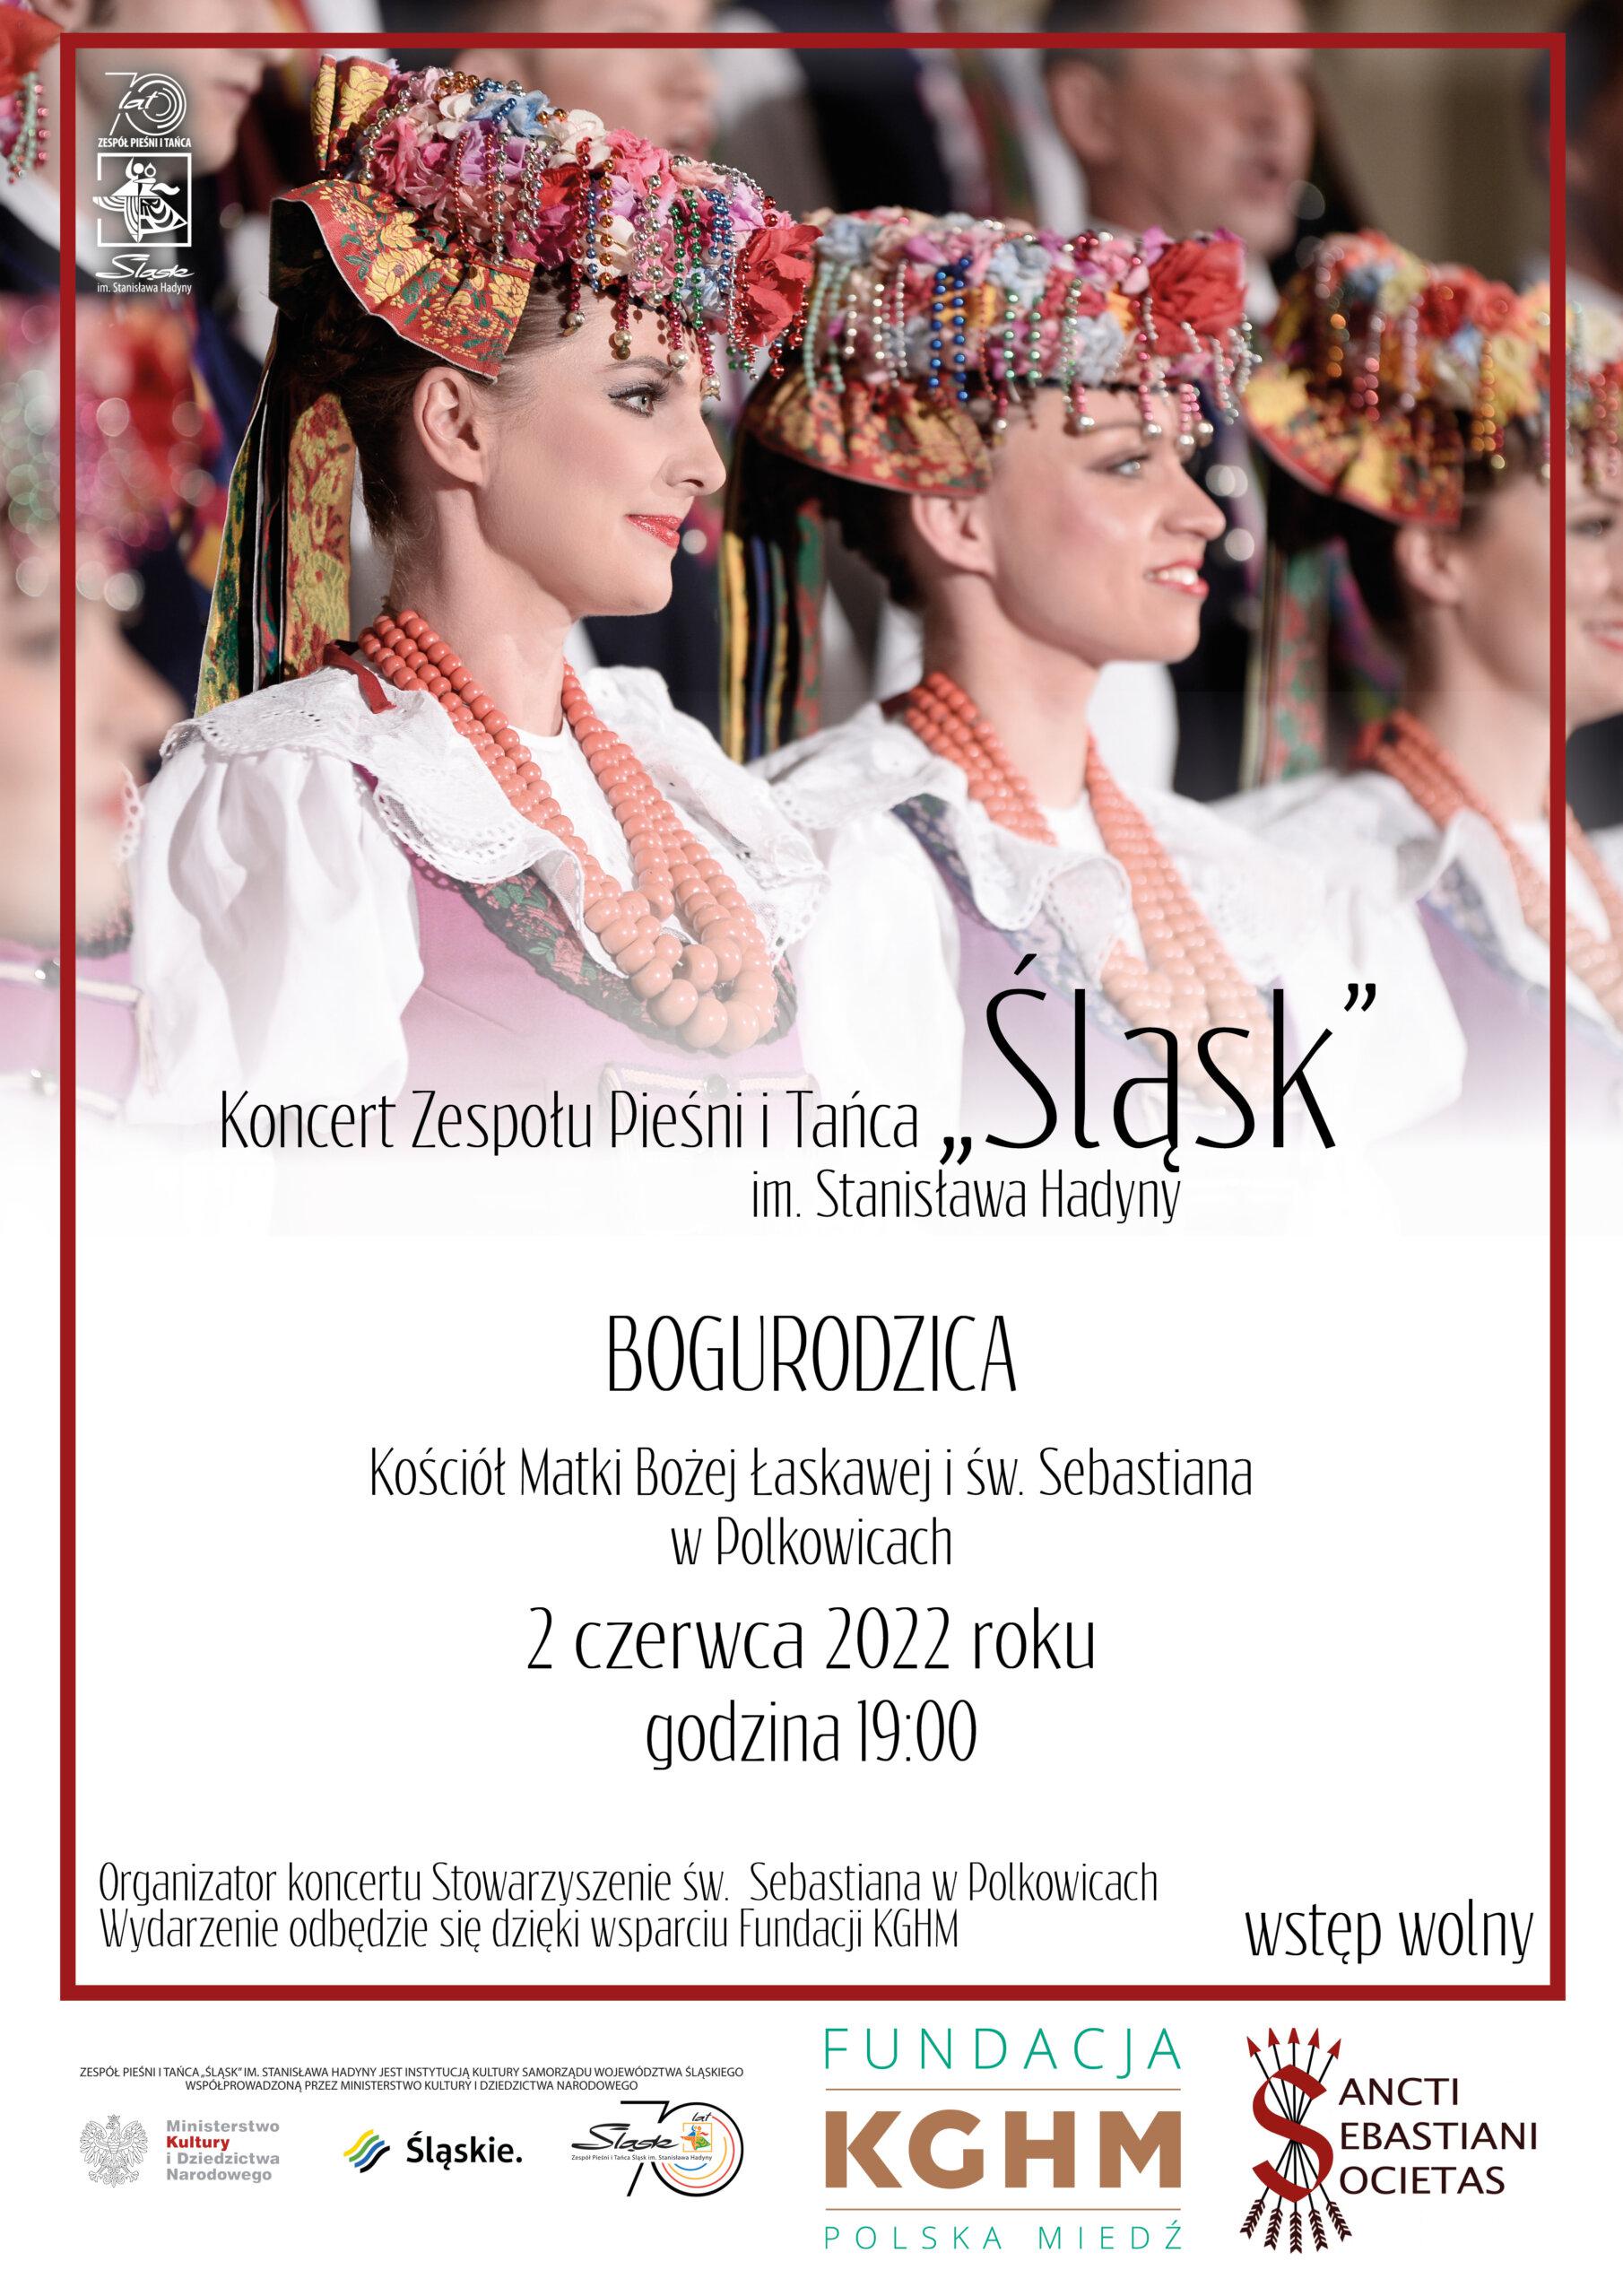 Koncert Zespołu Pieśni i Tańca "Śląsk" w Polkowicach